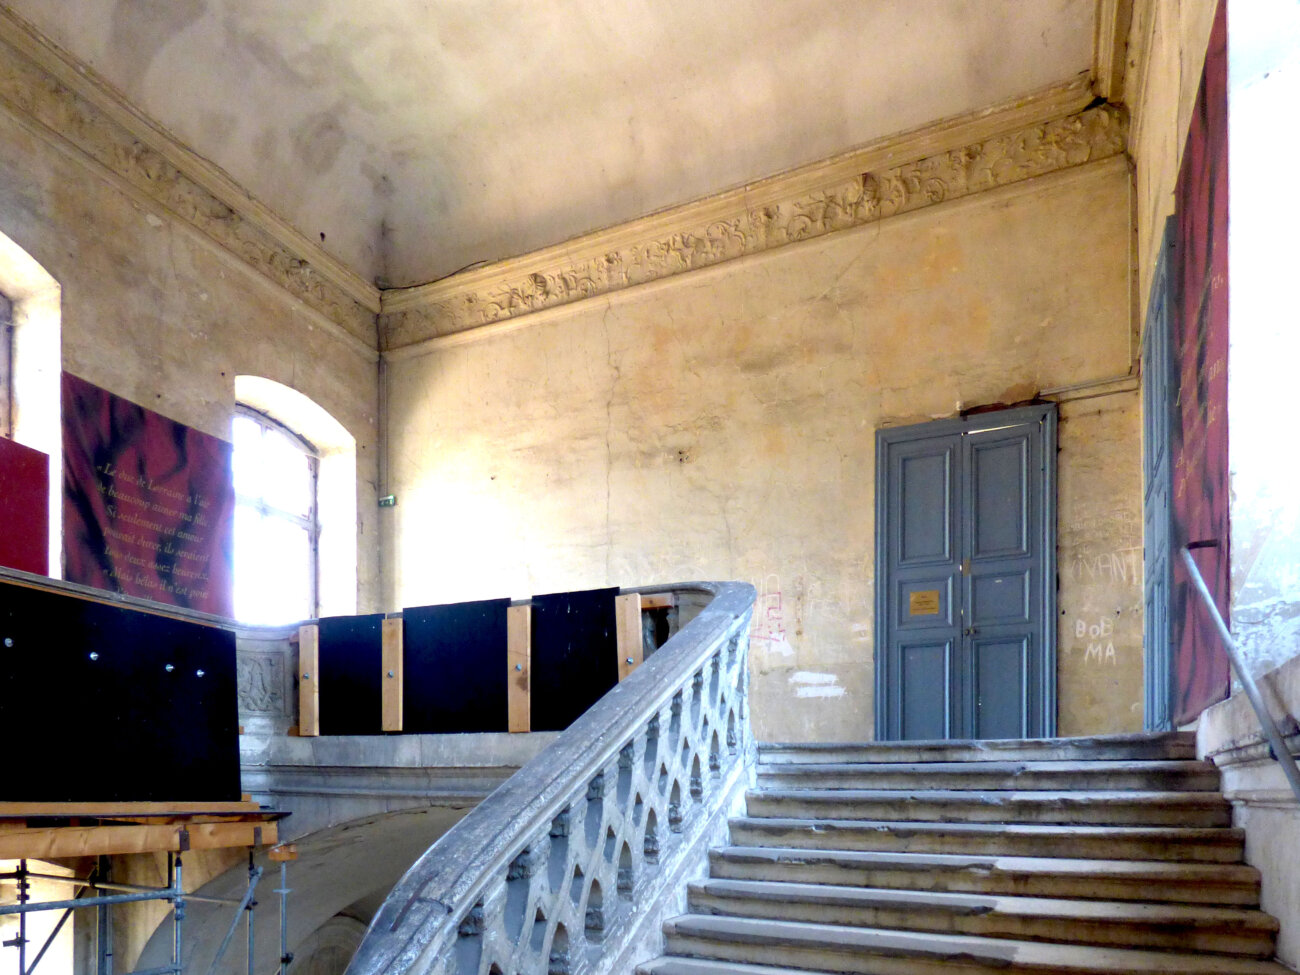 Lunéville – Escalier Nord du Château